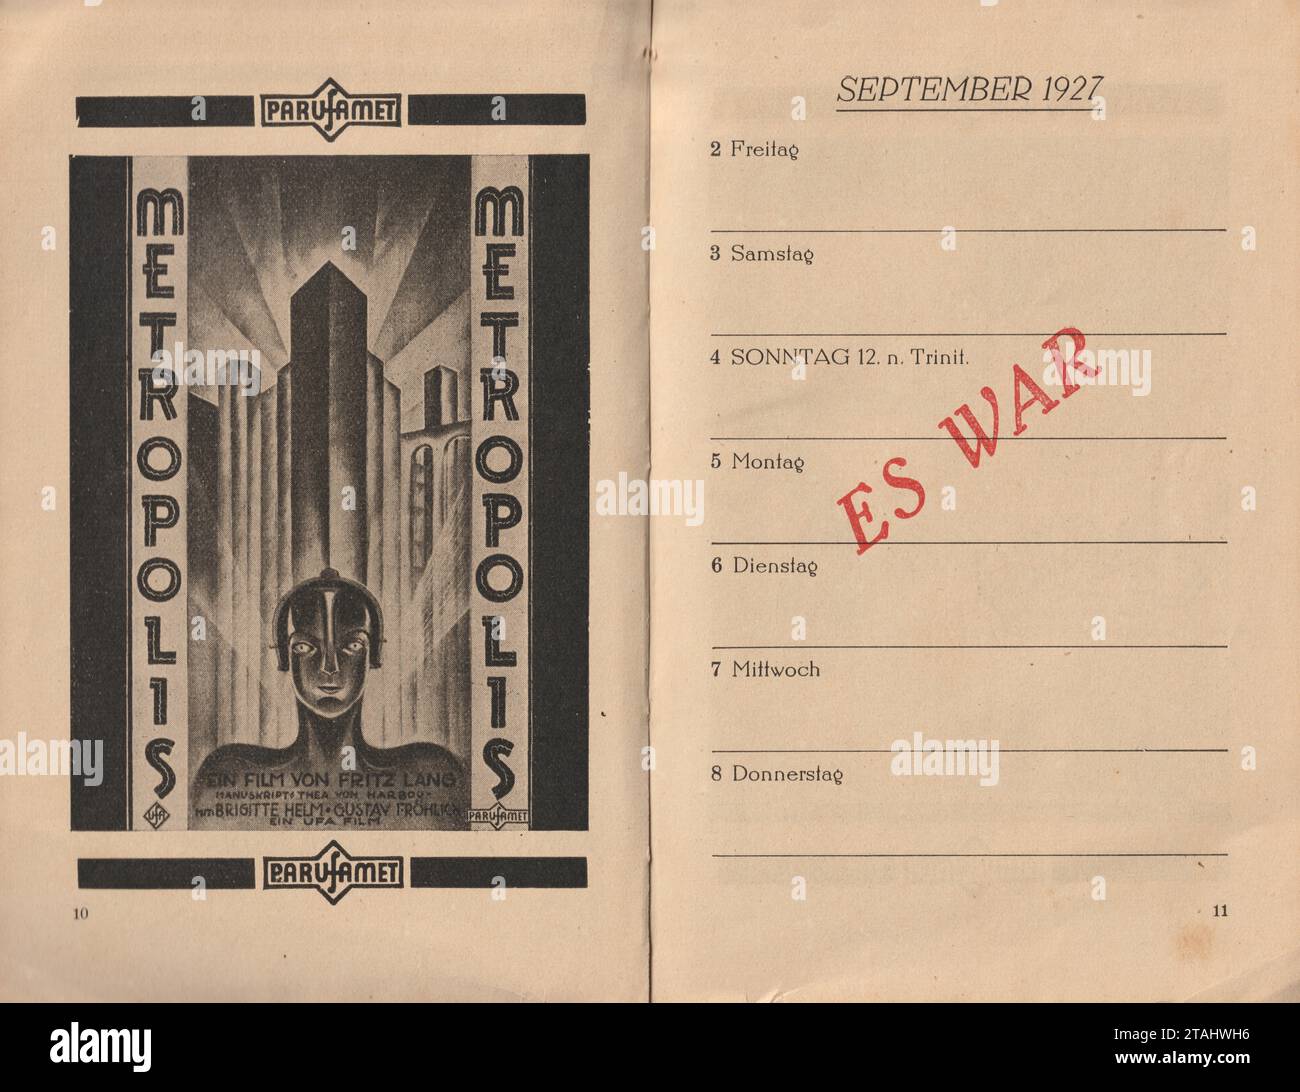 Metropolis UFA 1927 Poster Art / Agenda page. Réalisé par Fritz Lang. Avec Brigitte Helm. Banque D'Images